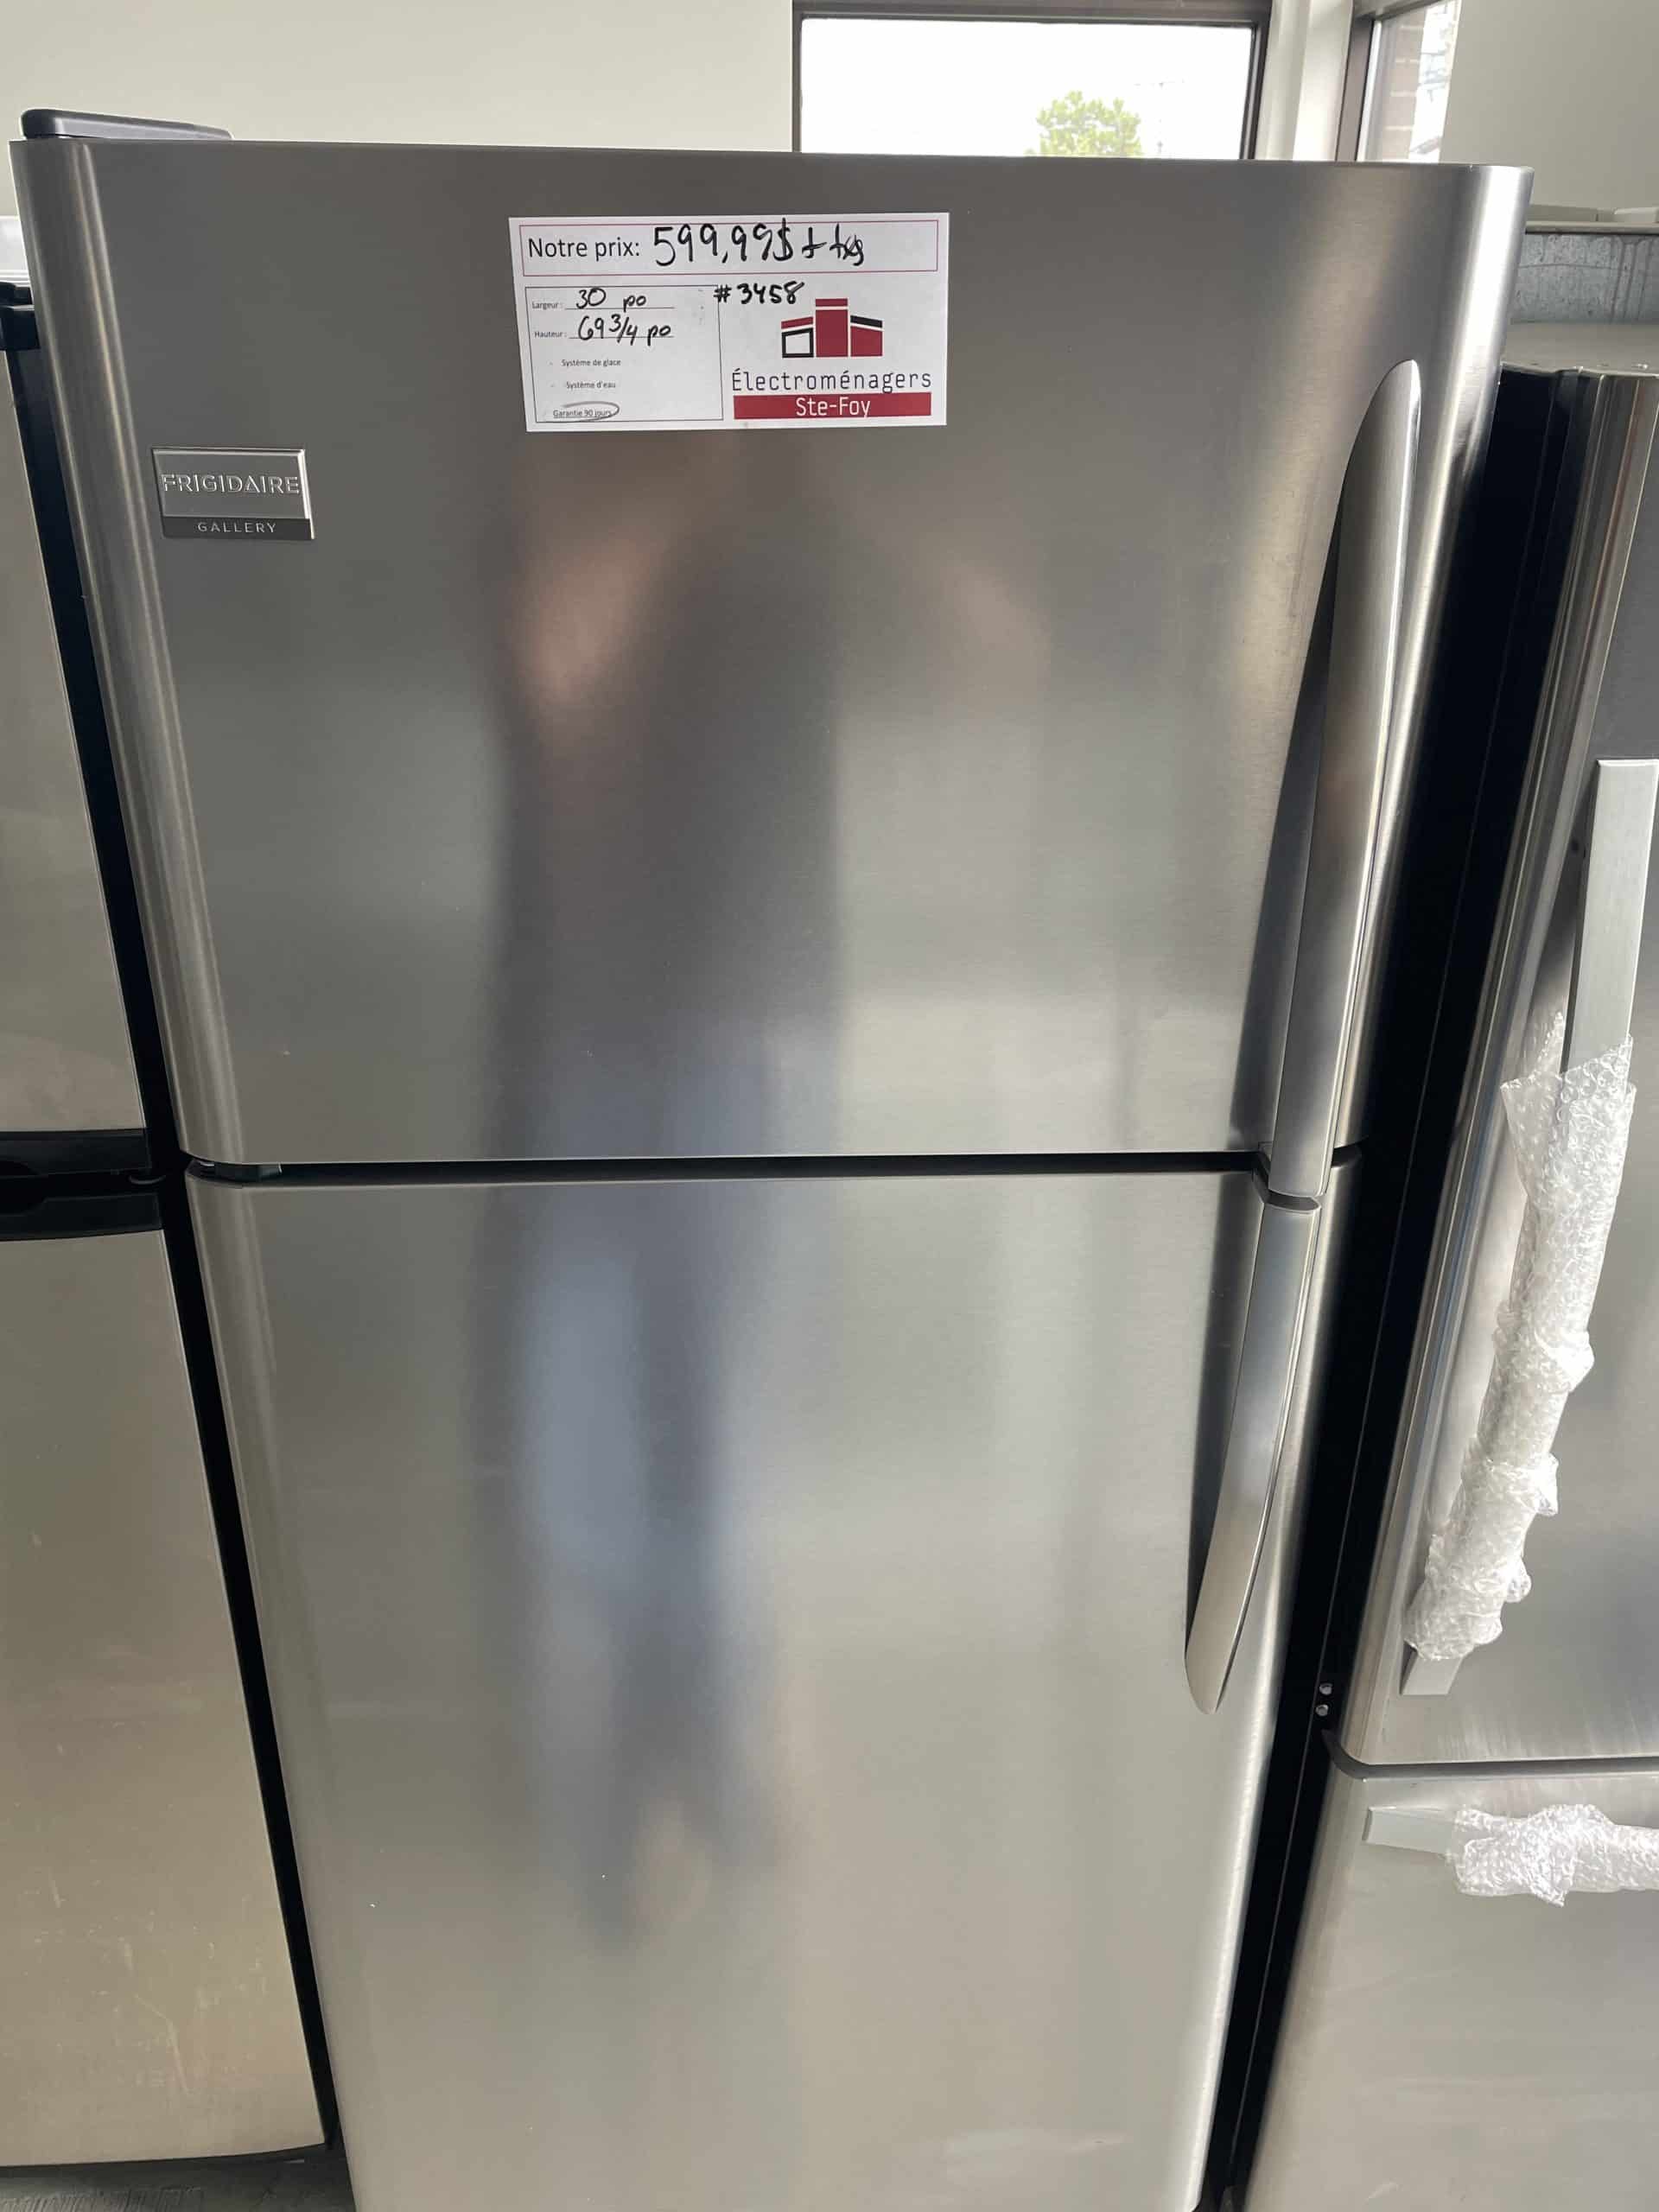 Réfrigérateurs à congélateur supérieur - Réfrigérateurs